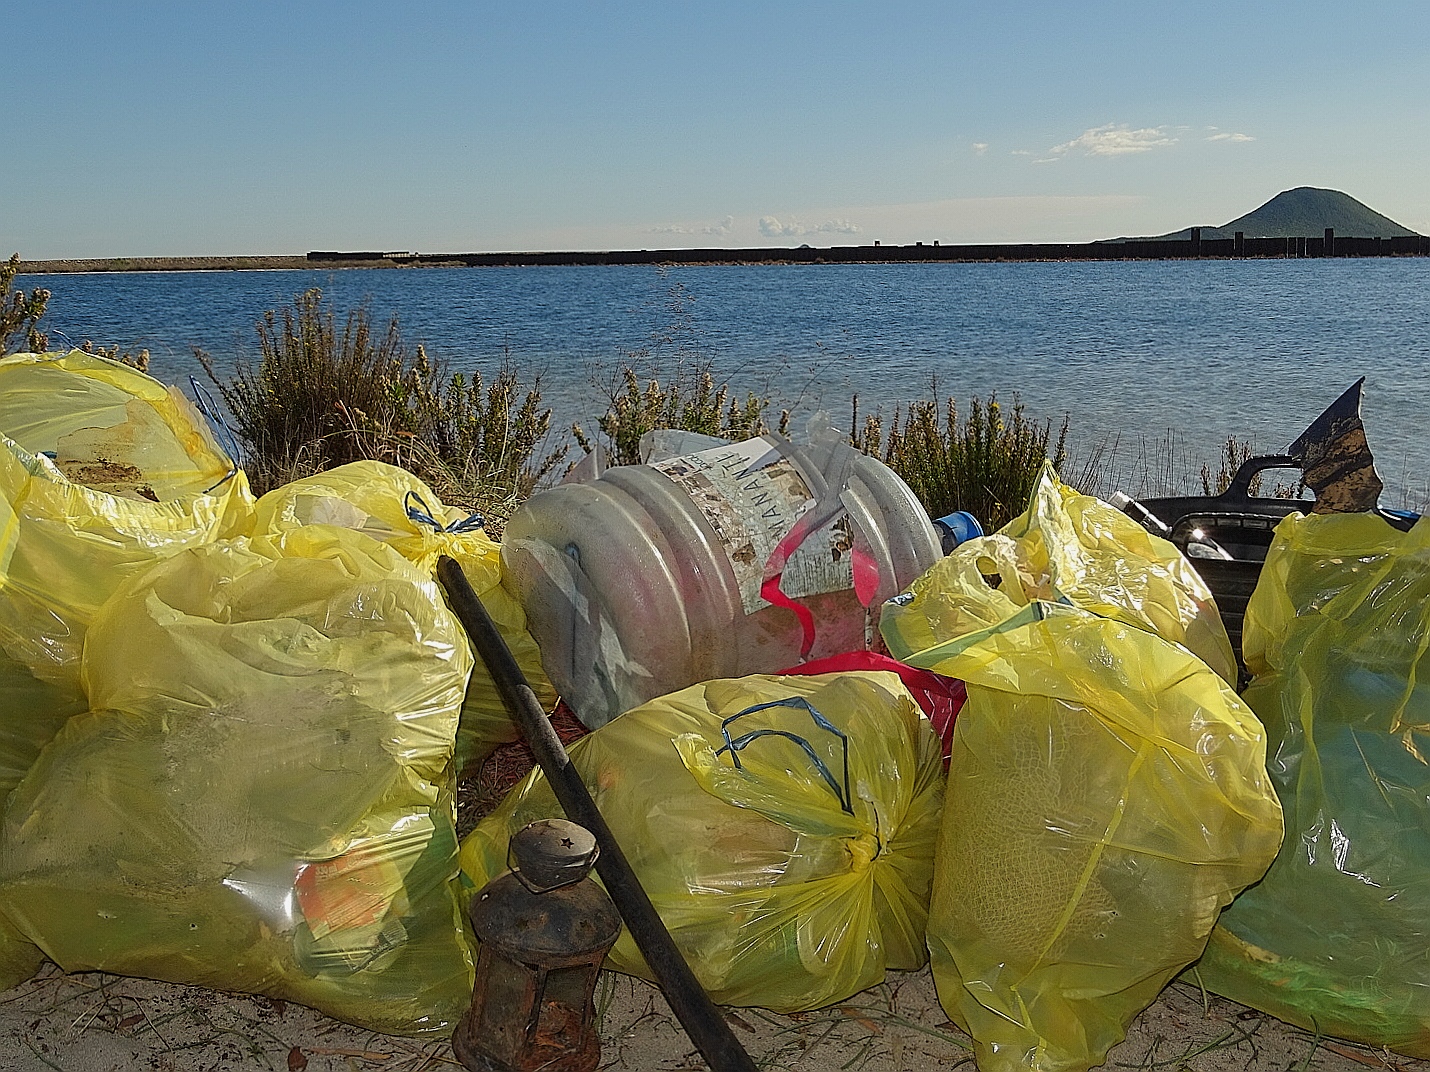 Parte de los residuos recogidos durante la jornada, con Isla Grosa de fondo